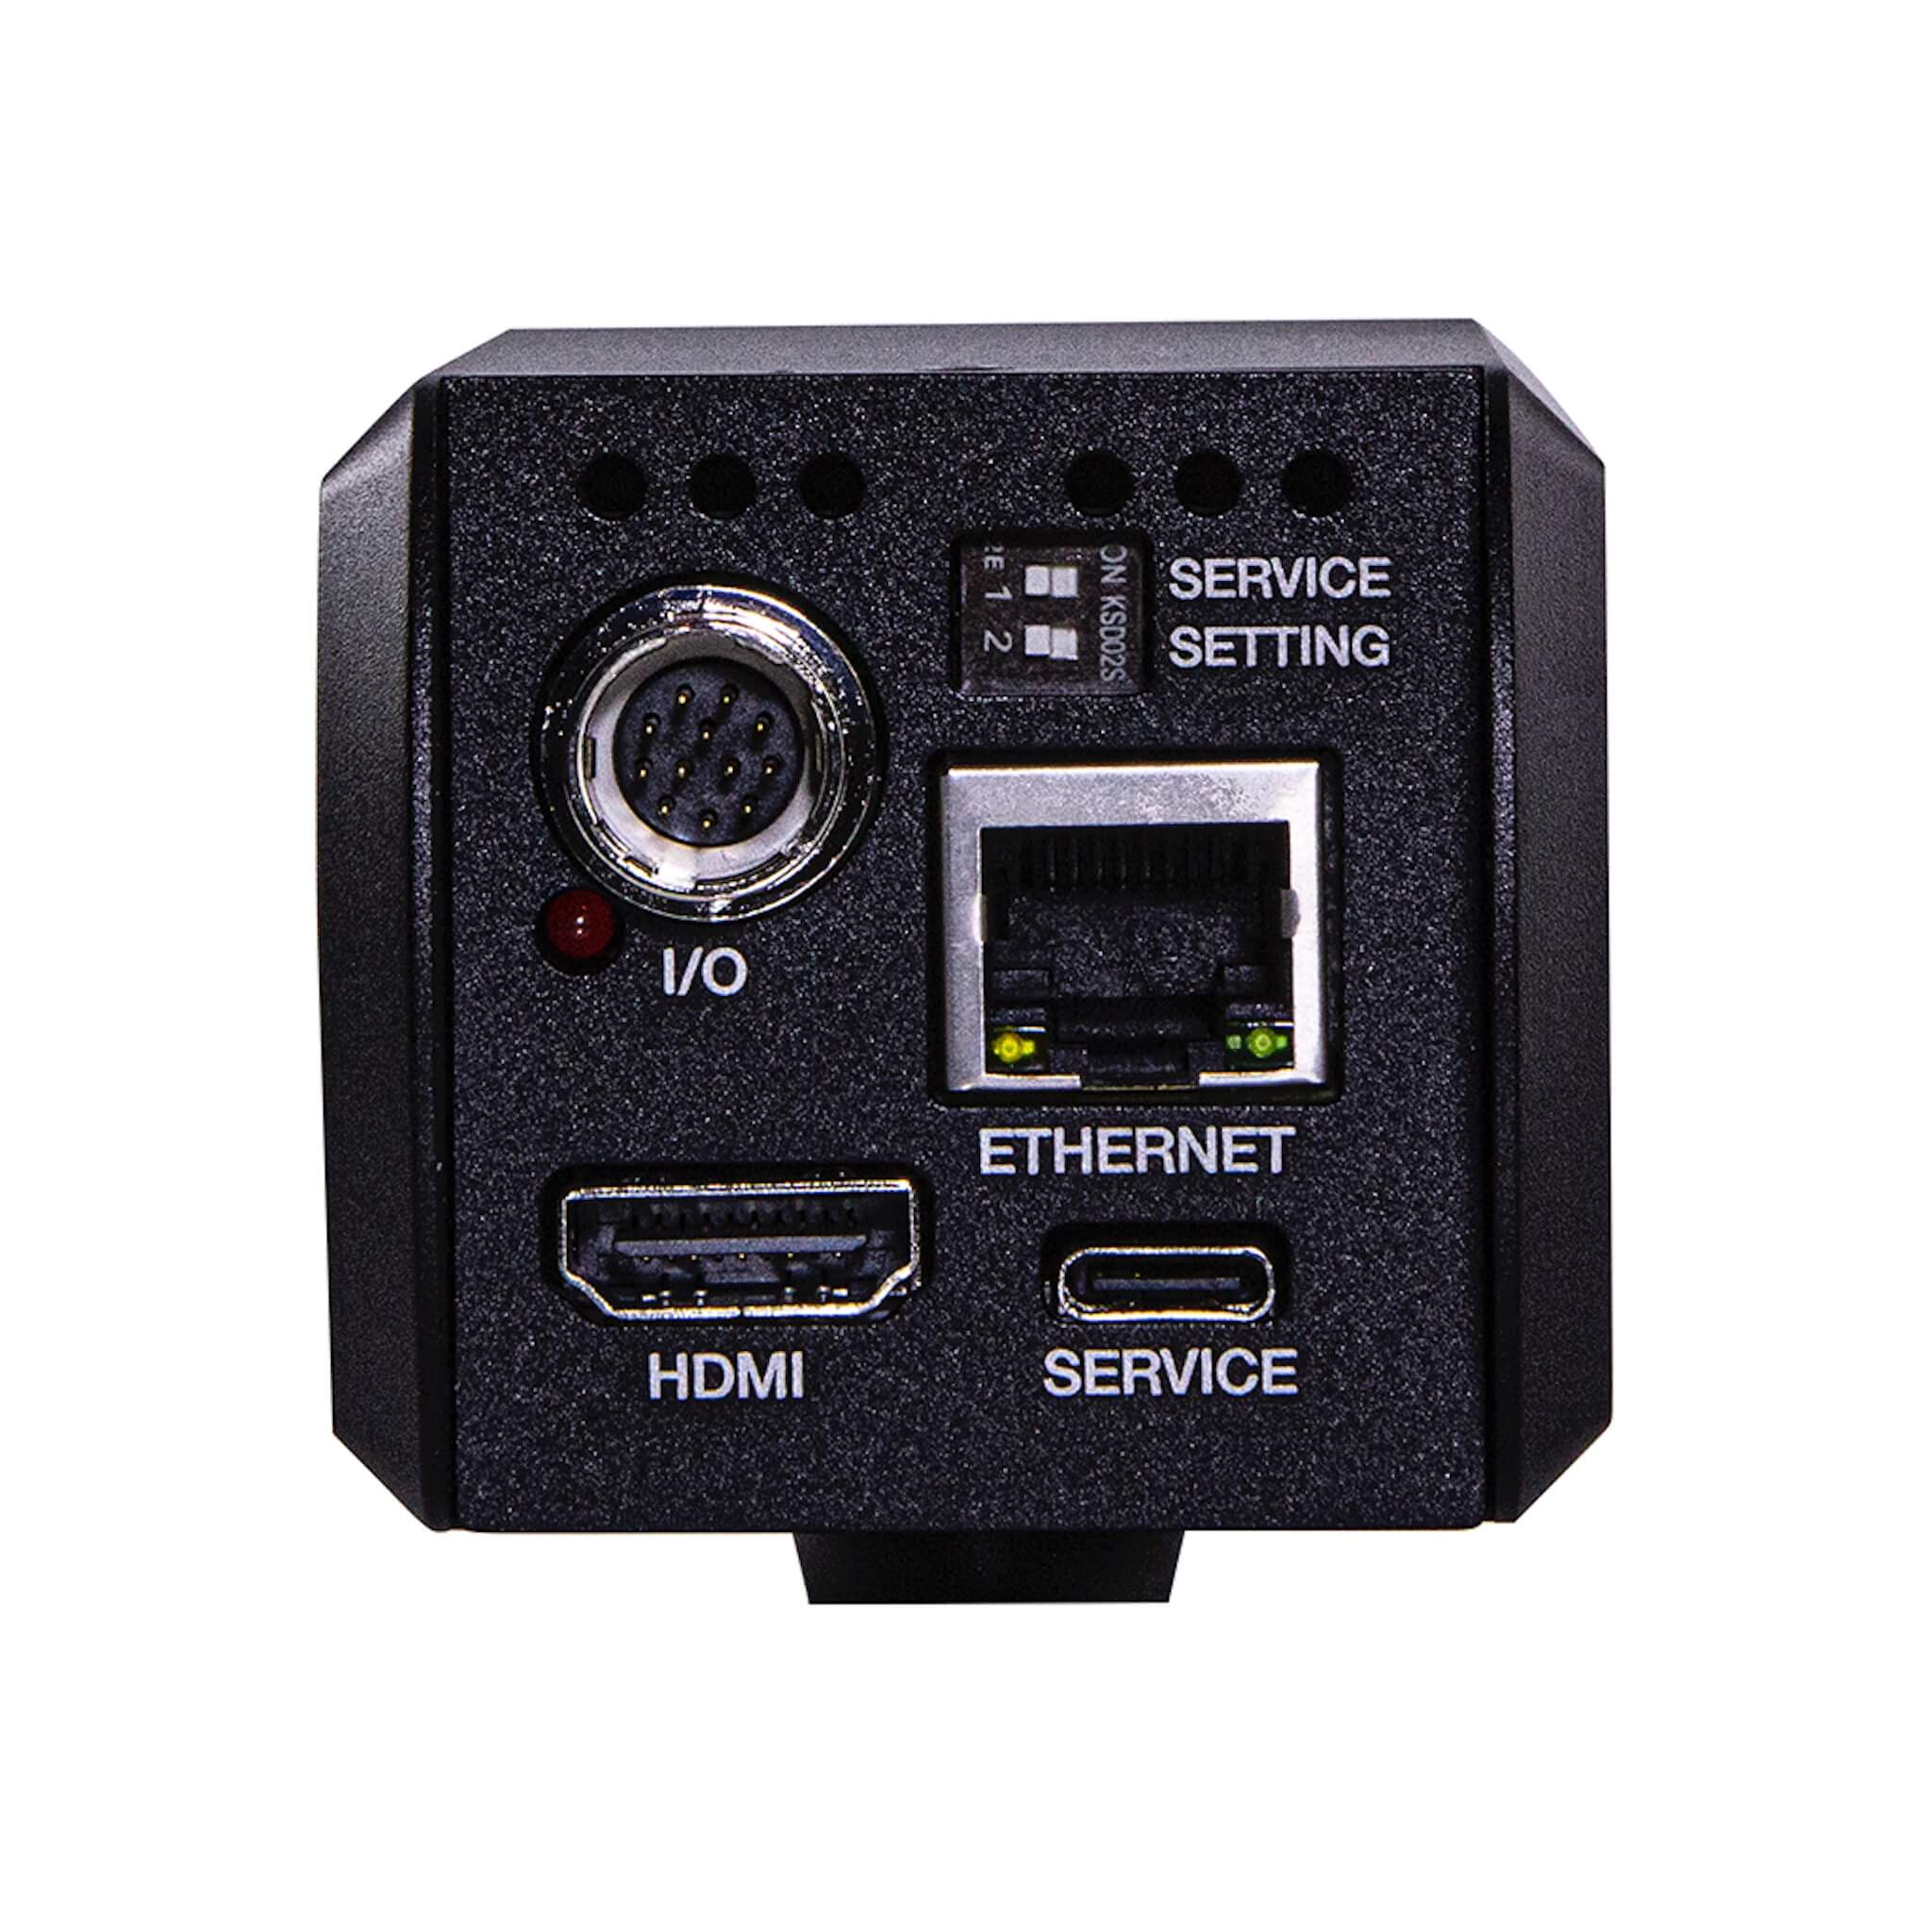 Marshall CV574 - Miniature 4K UHD Video Camera with NDI|HX3 and HDMI, back